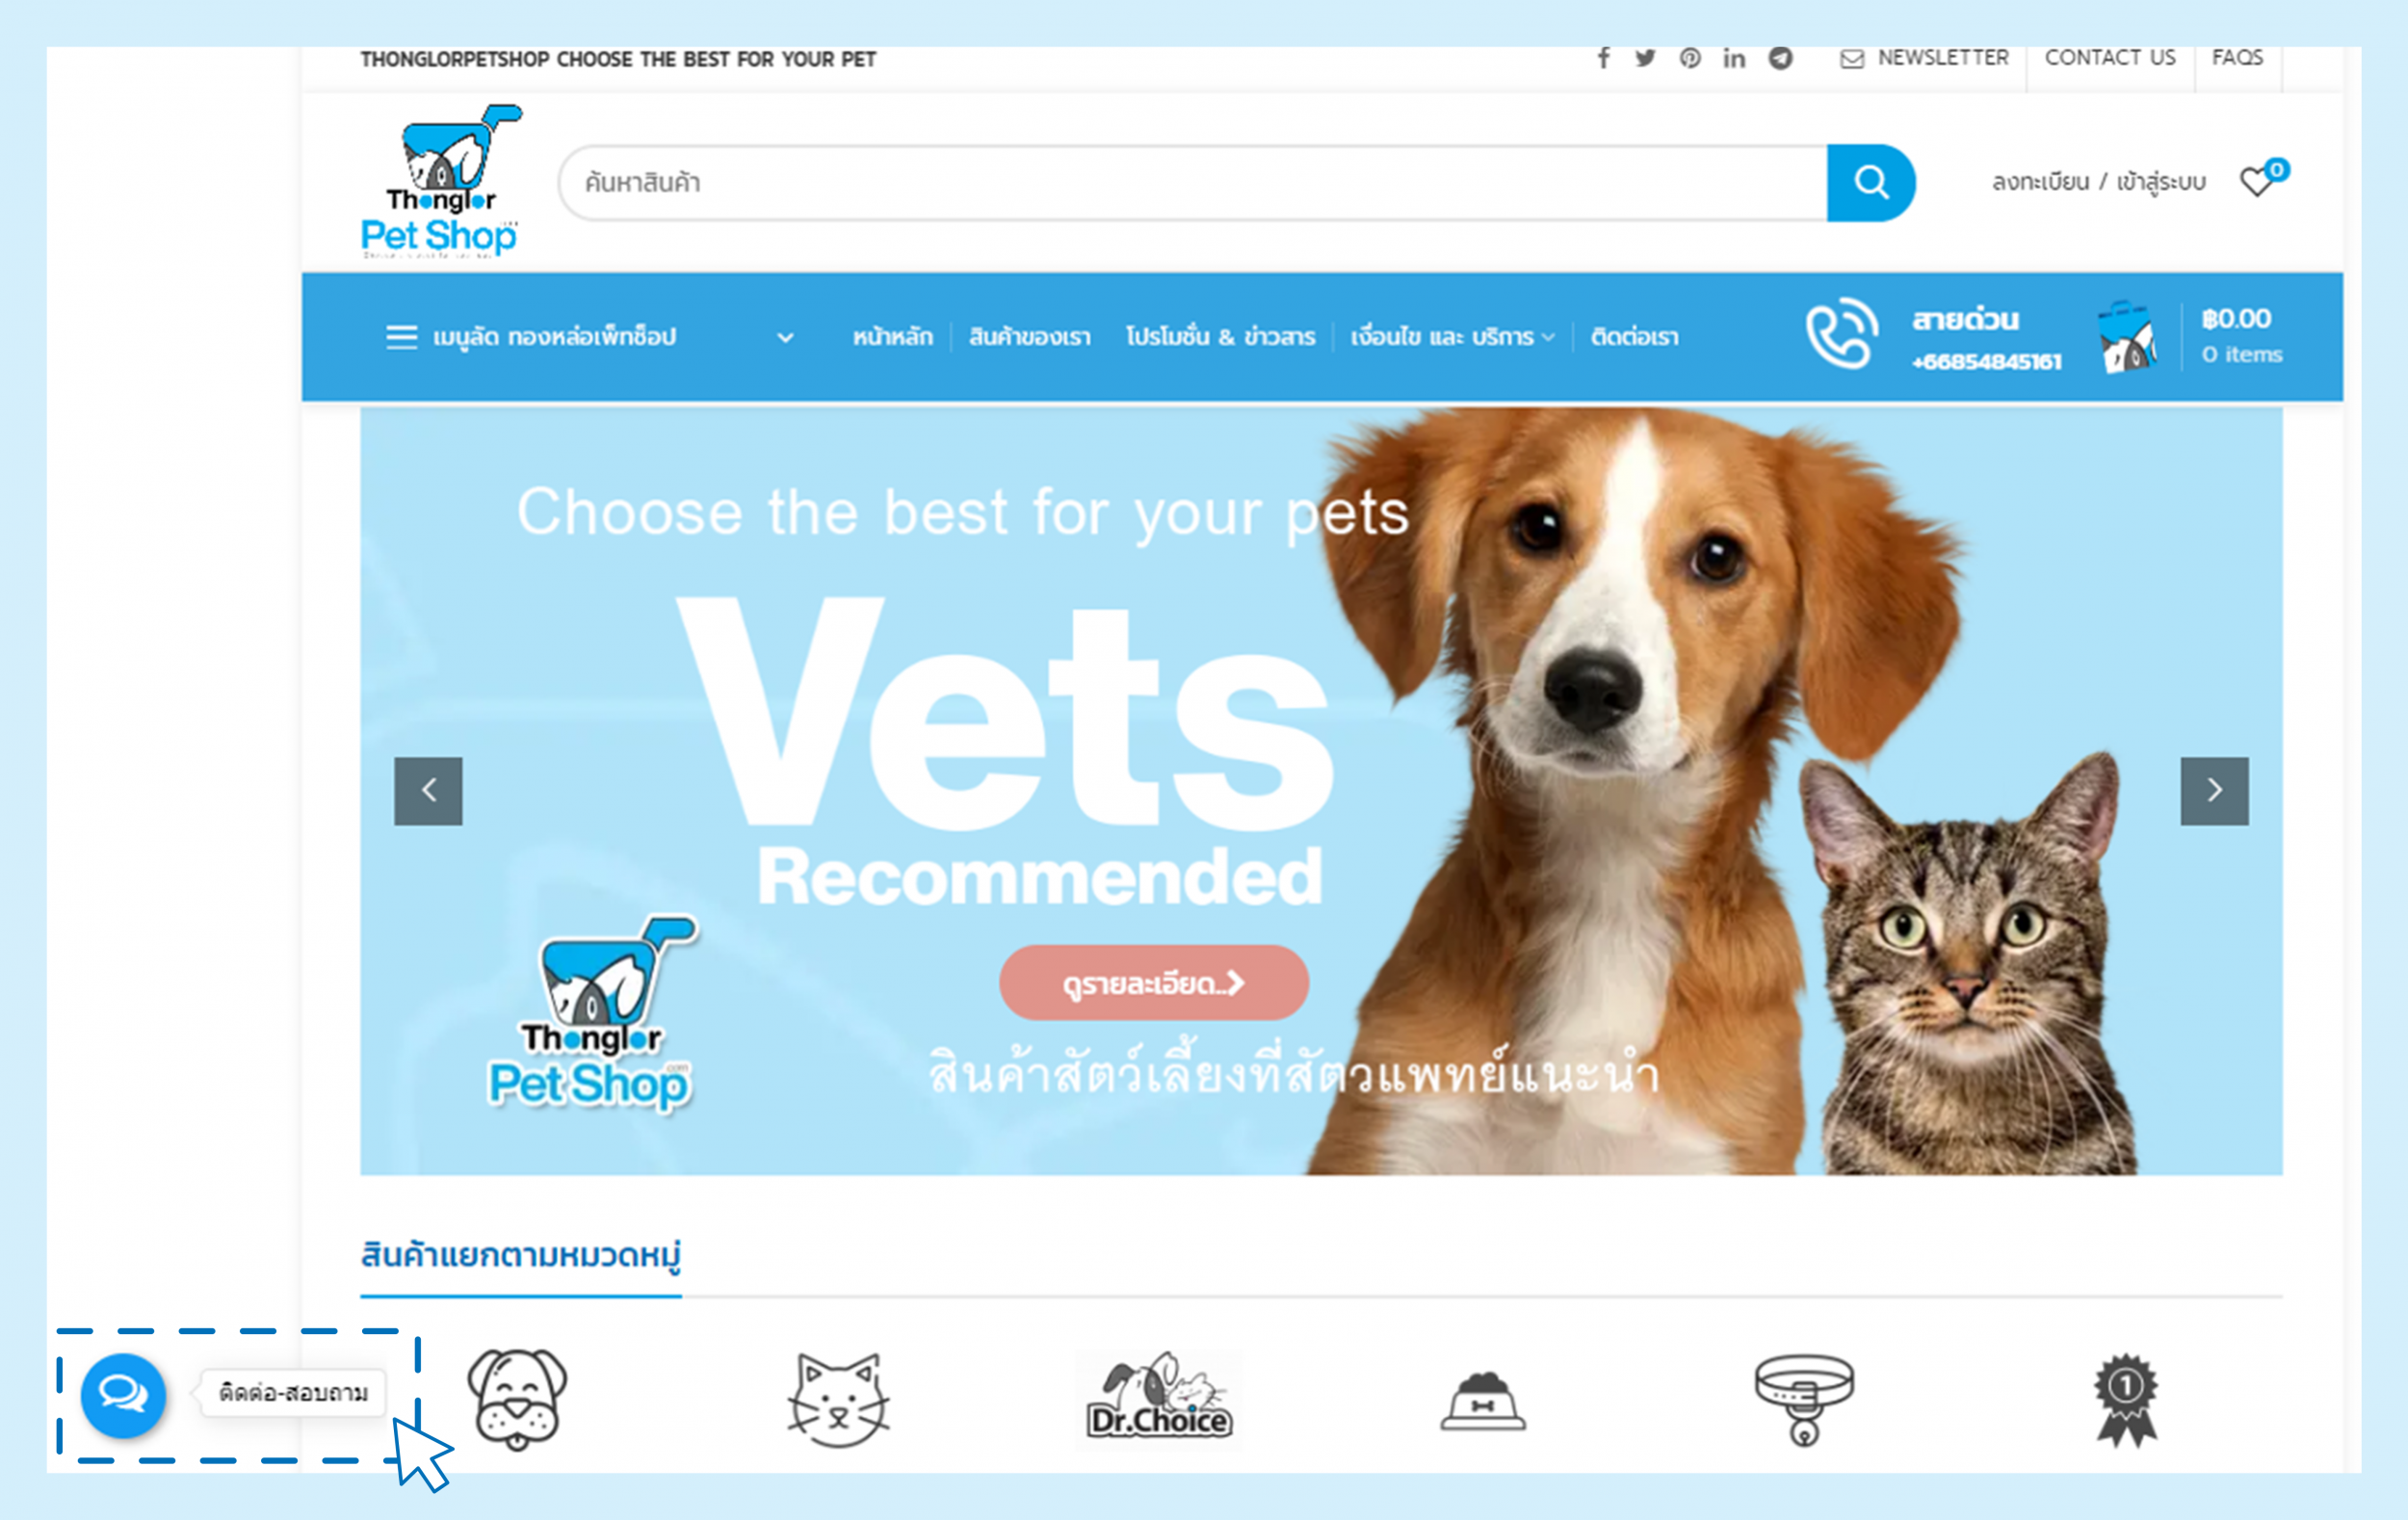 Dogilike.com :: Դ! Thonglor Pet Shop Online ͻʺ¡